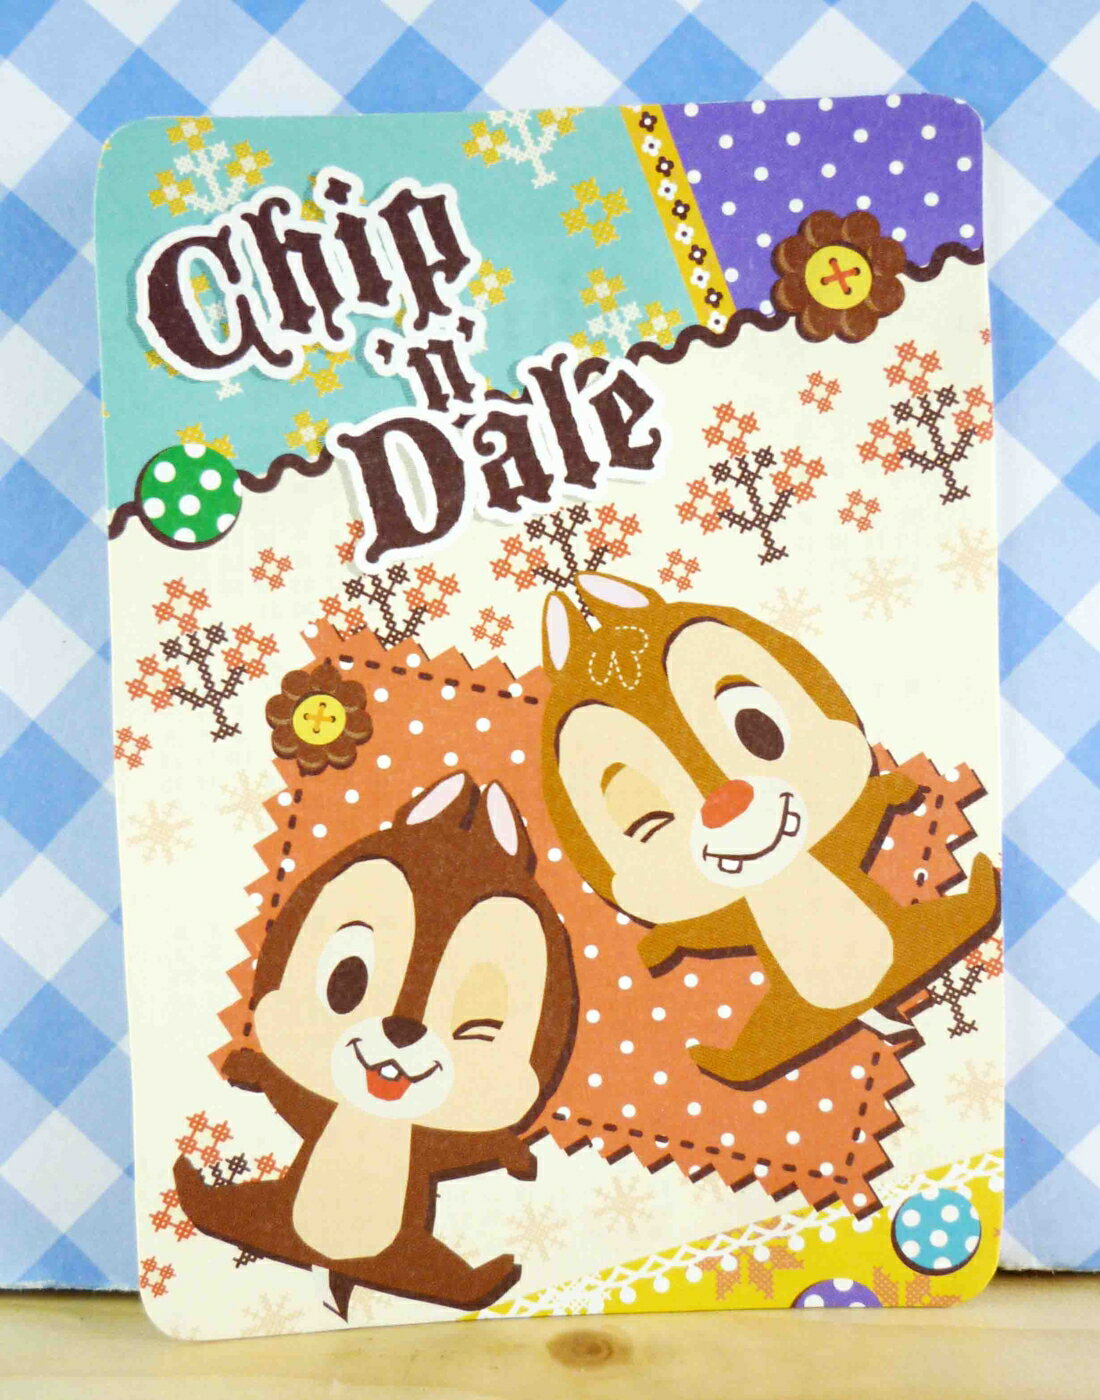 【震撼精品百貨】Chip N Dale 奇奇蒂蒂松鼠 Q版高興 震撼日式精品百貨